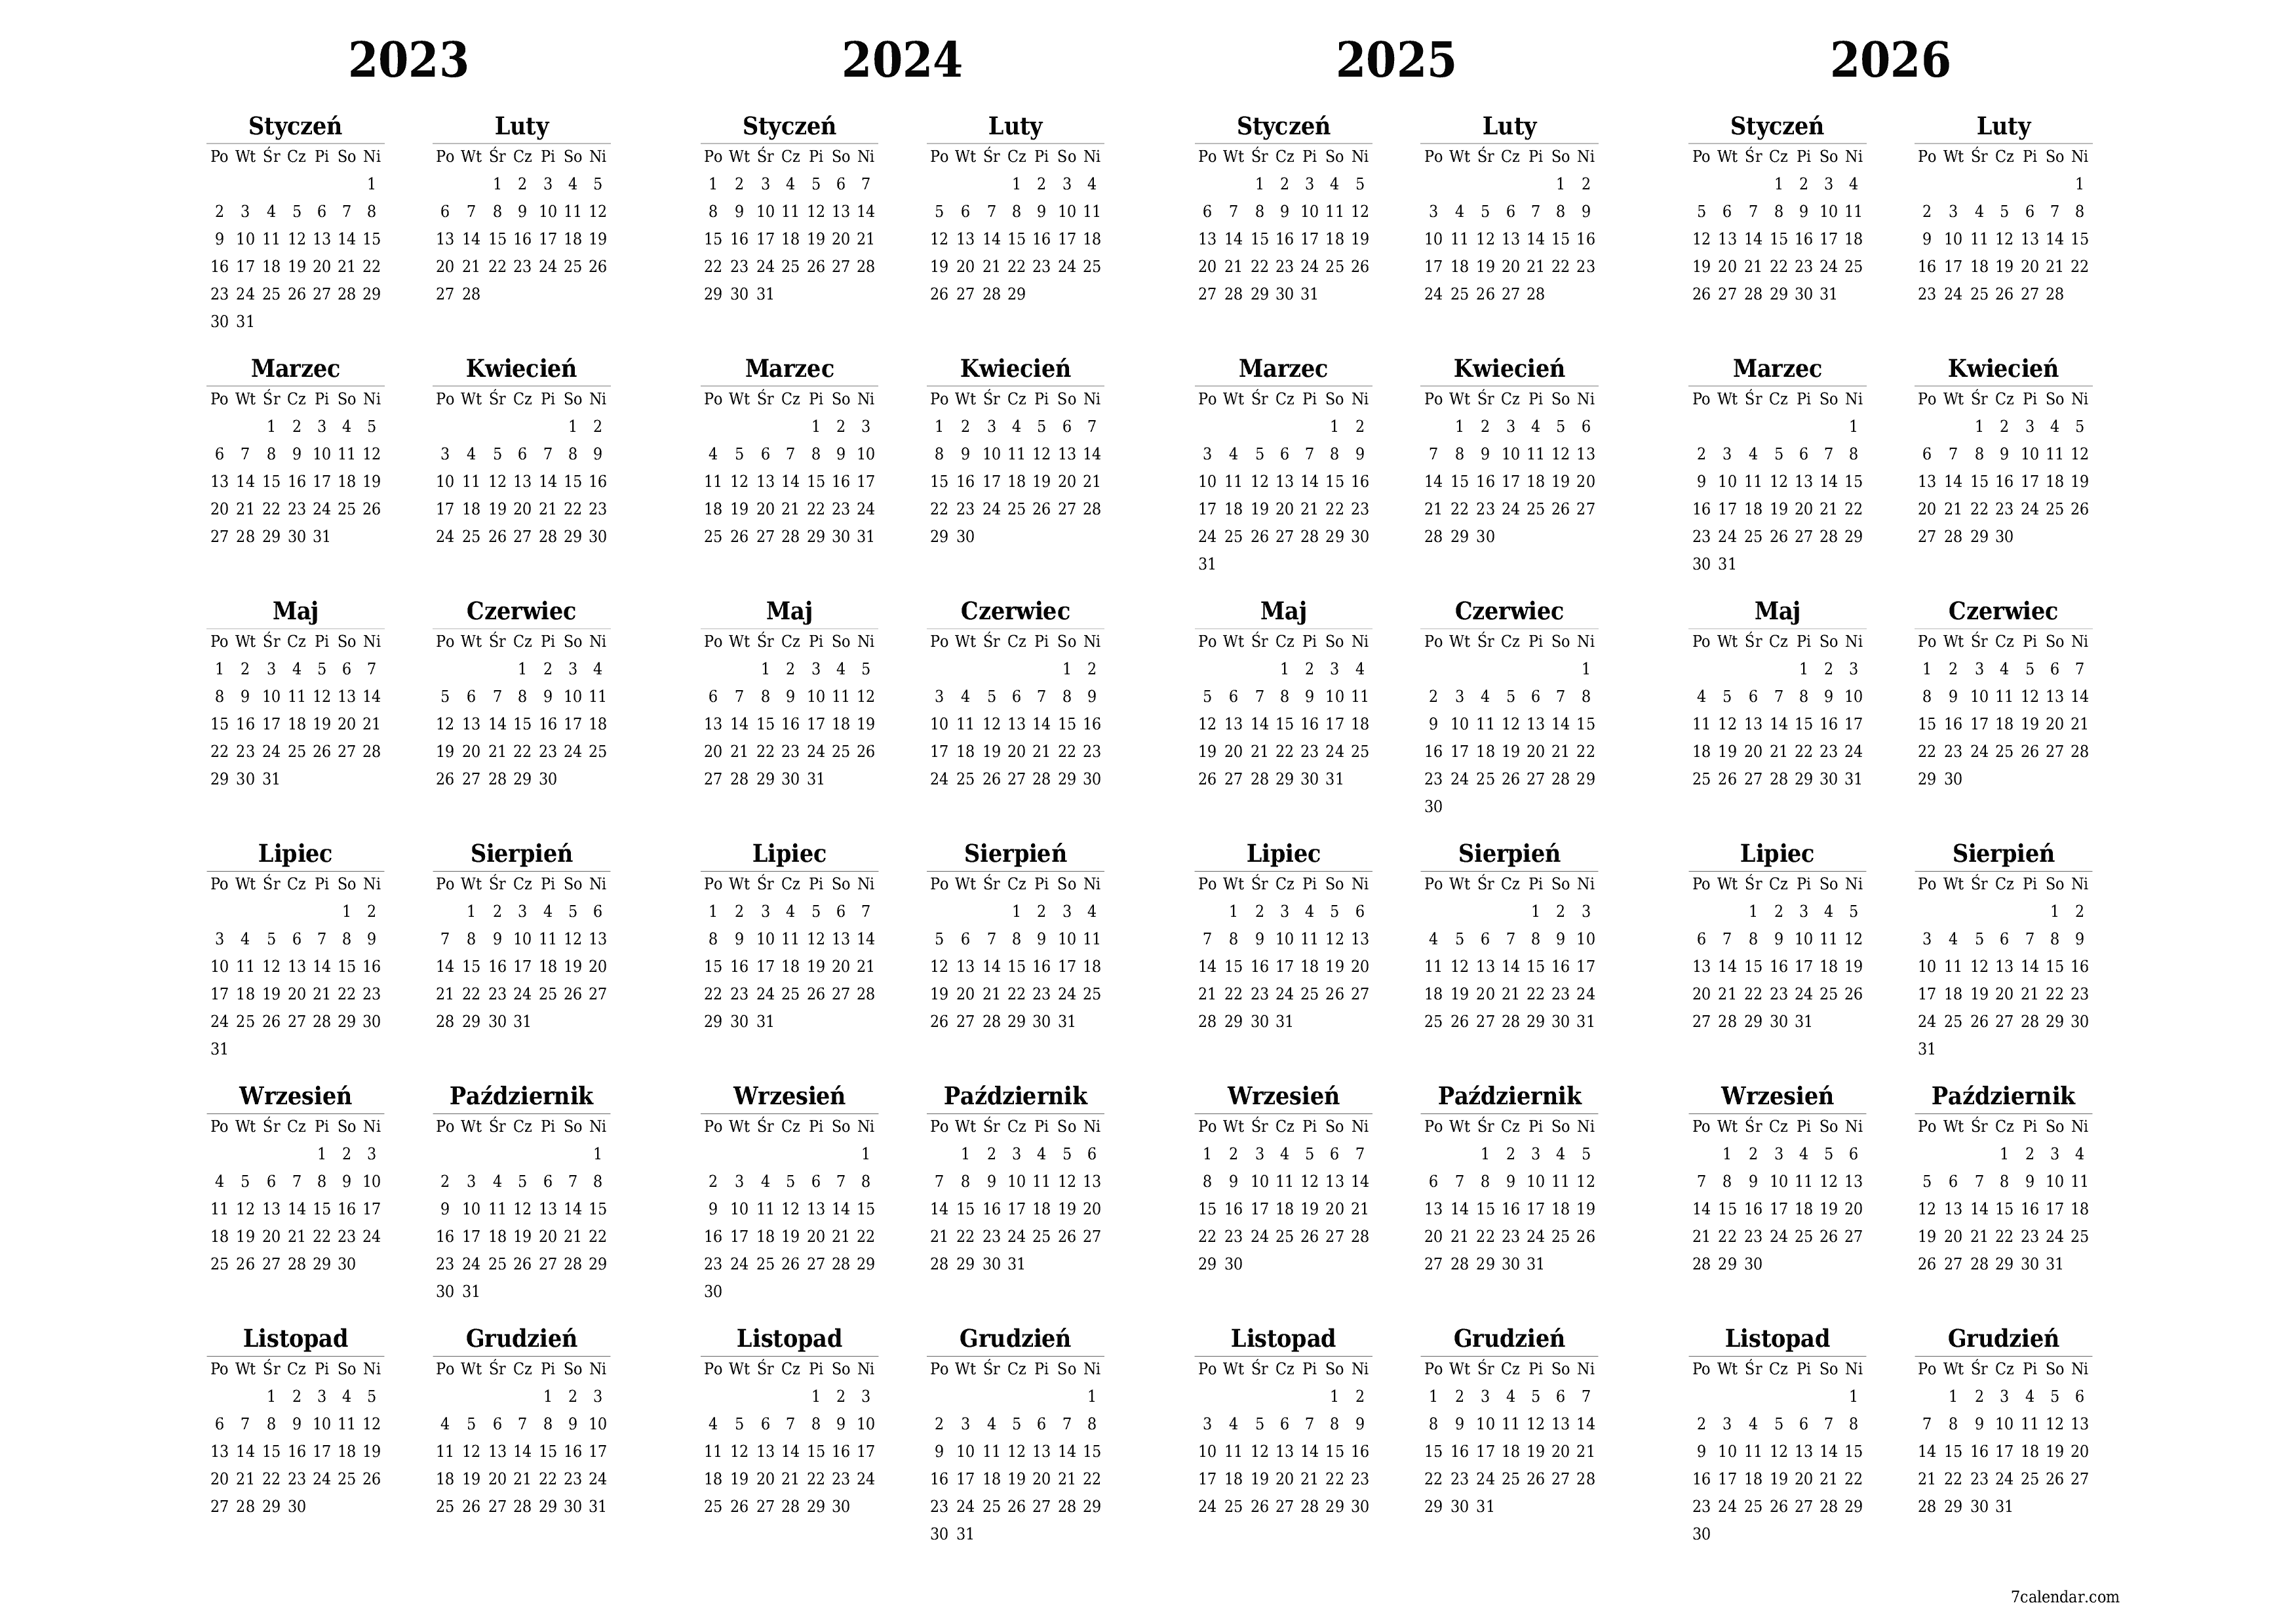 Pusty kalendarz roczny na rok 2023, 2024, 2025, 2026 zapisywanie i drukowanie w formacie PDF PNG Polish - 7calendar.com